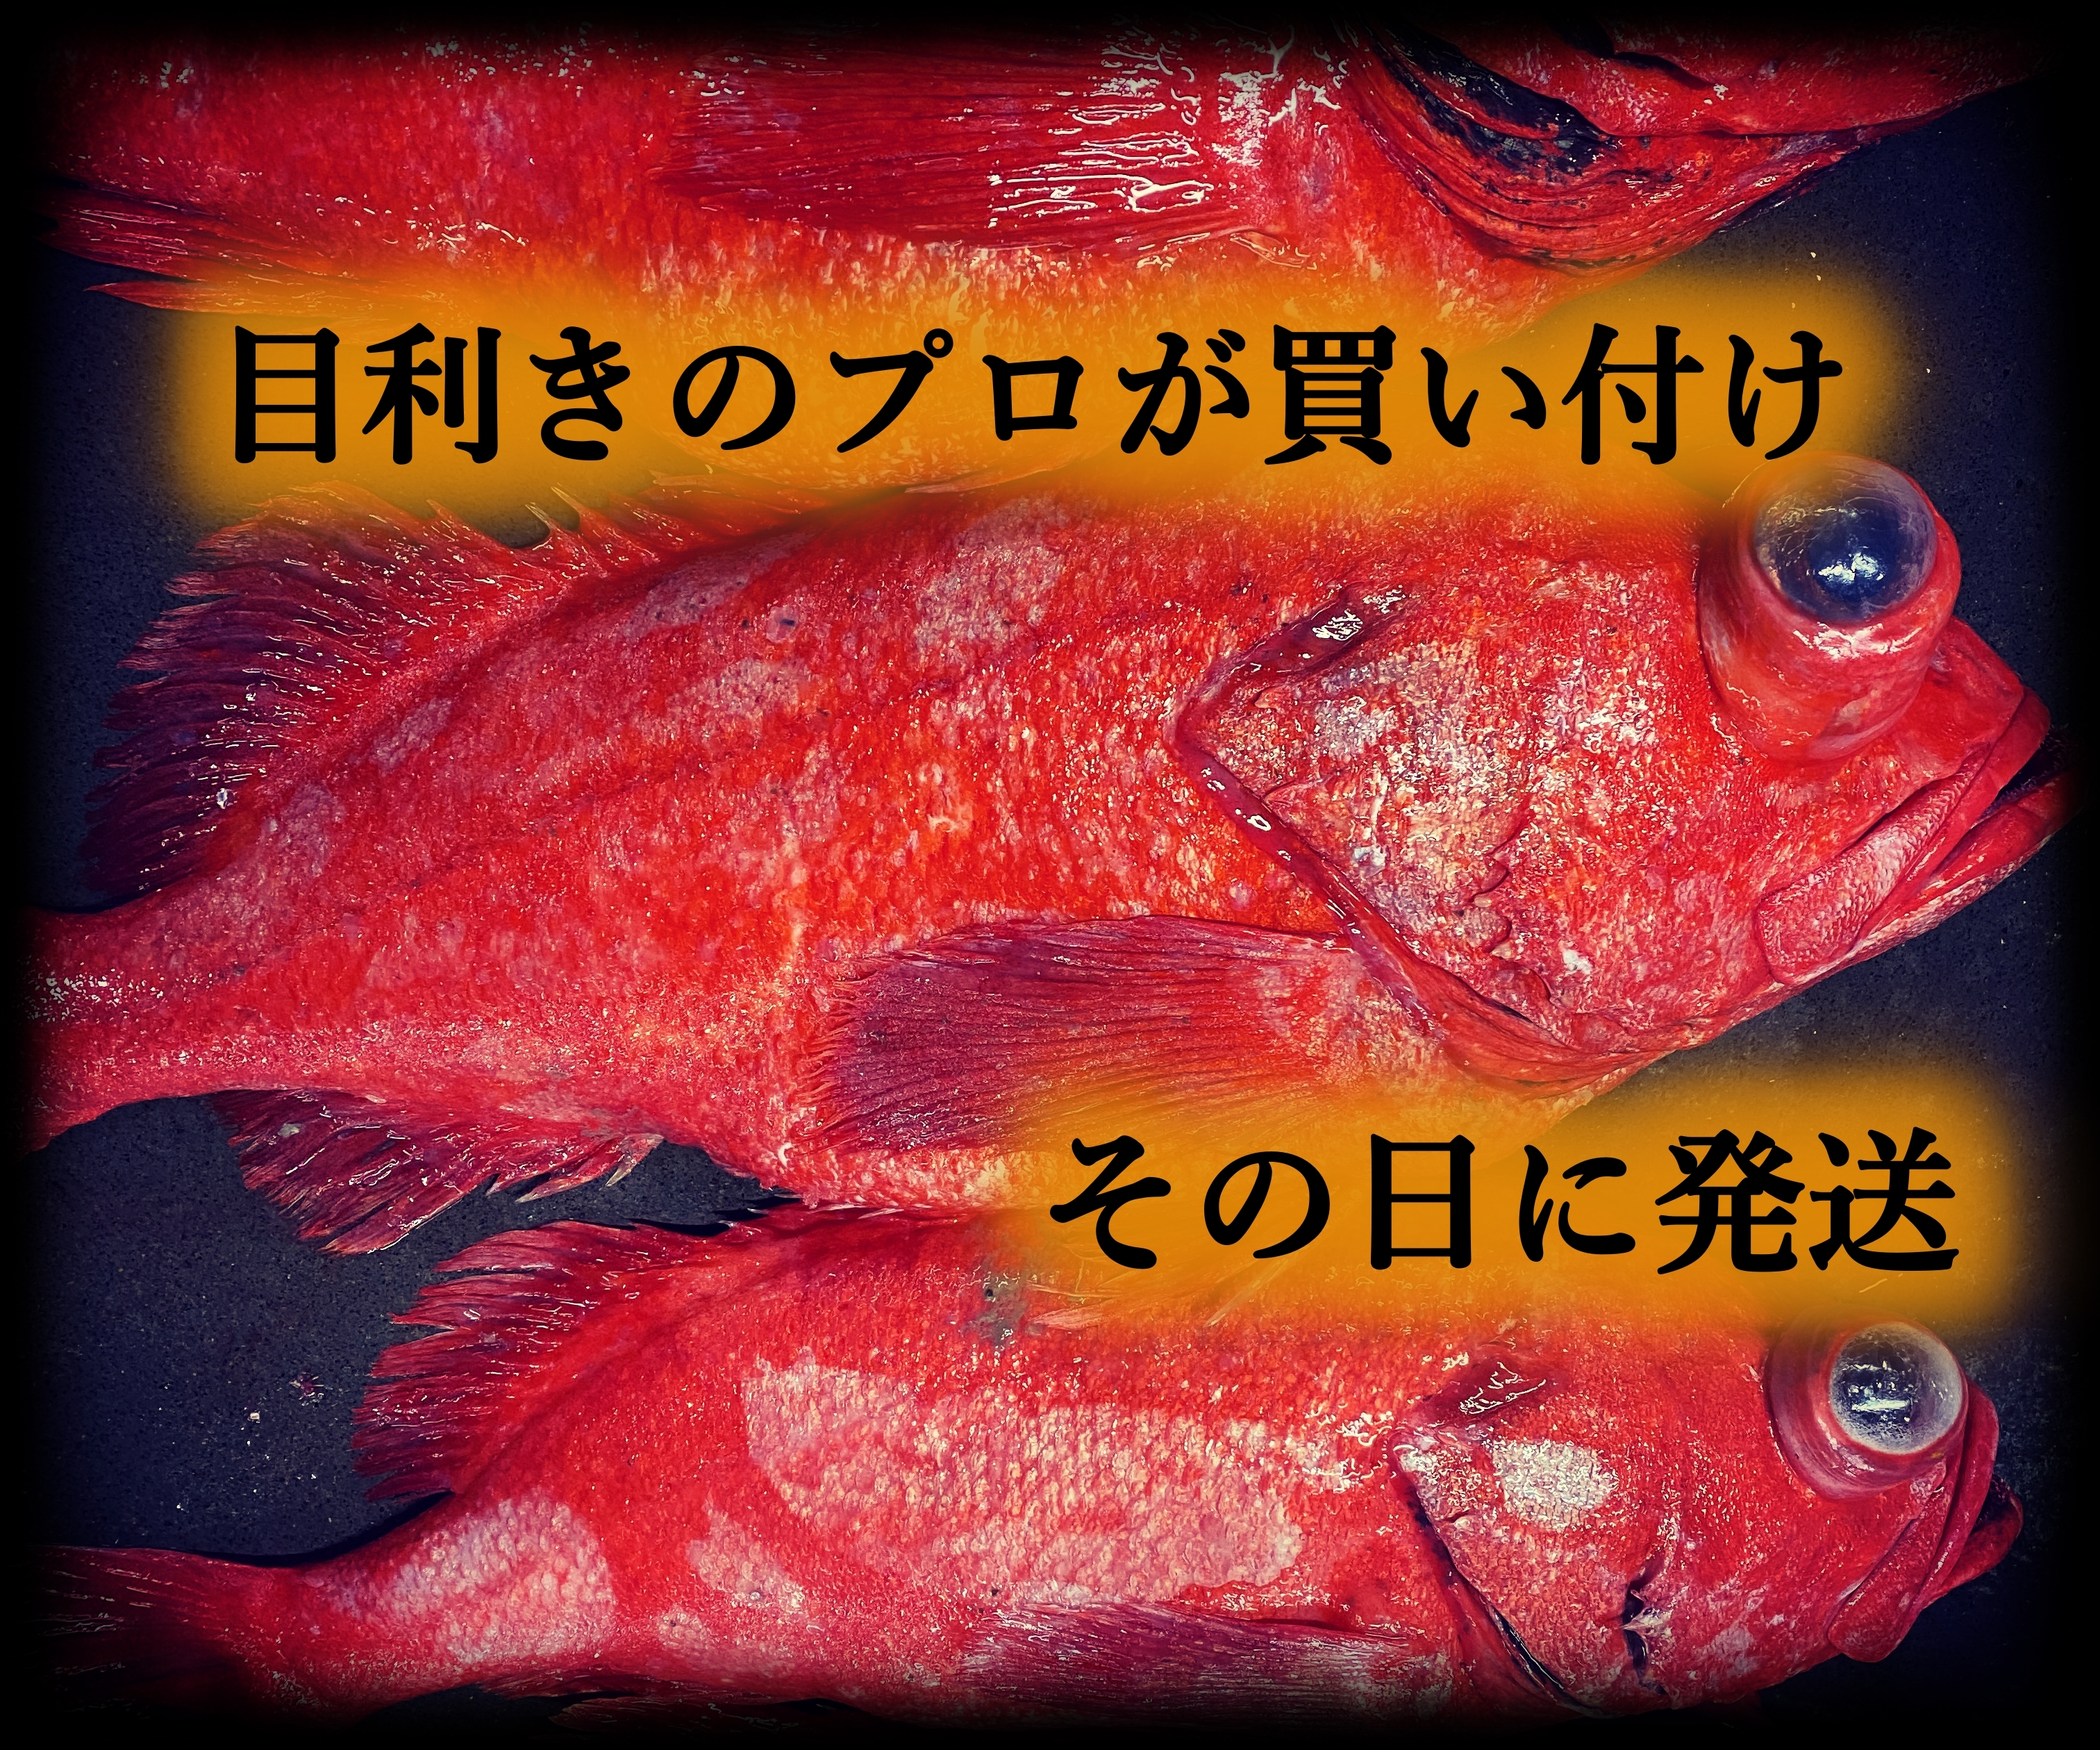 メヌケ メヌキ アコウ 魚 海鮮 希少 北海道 根室産 北海道 セレクトショップ